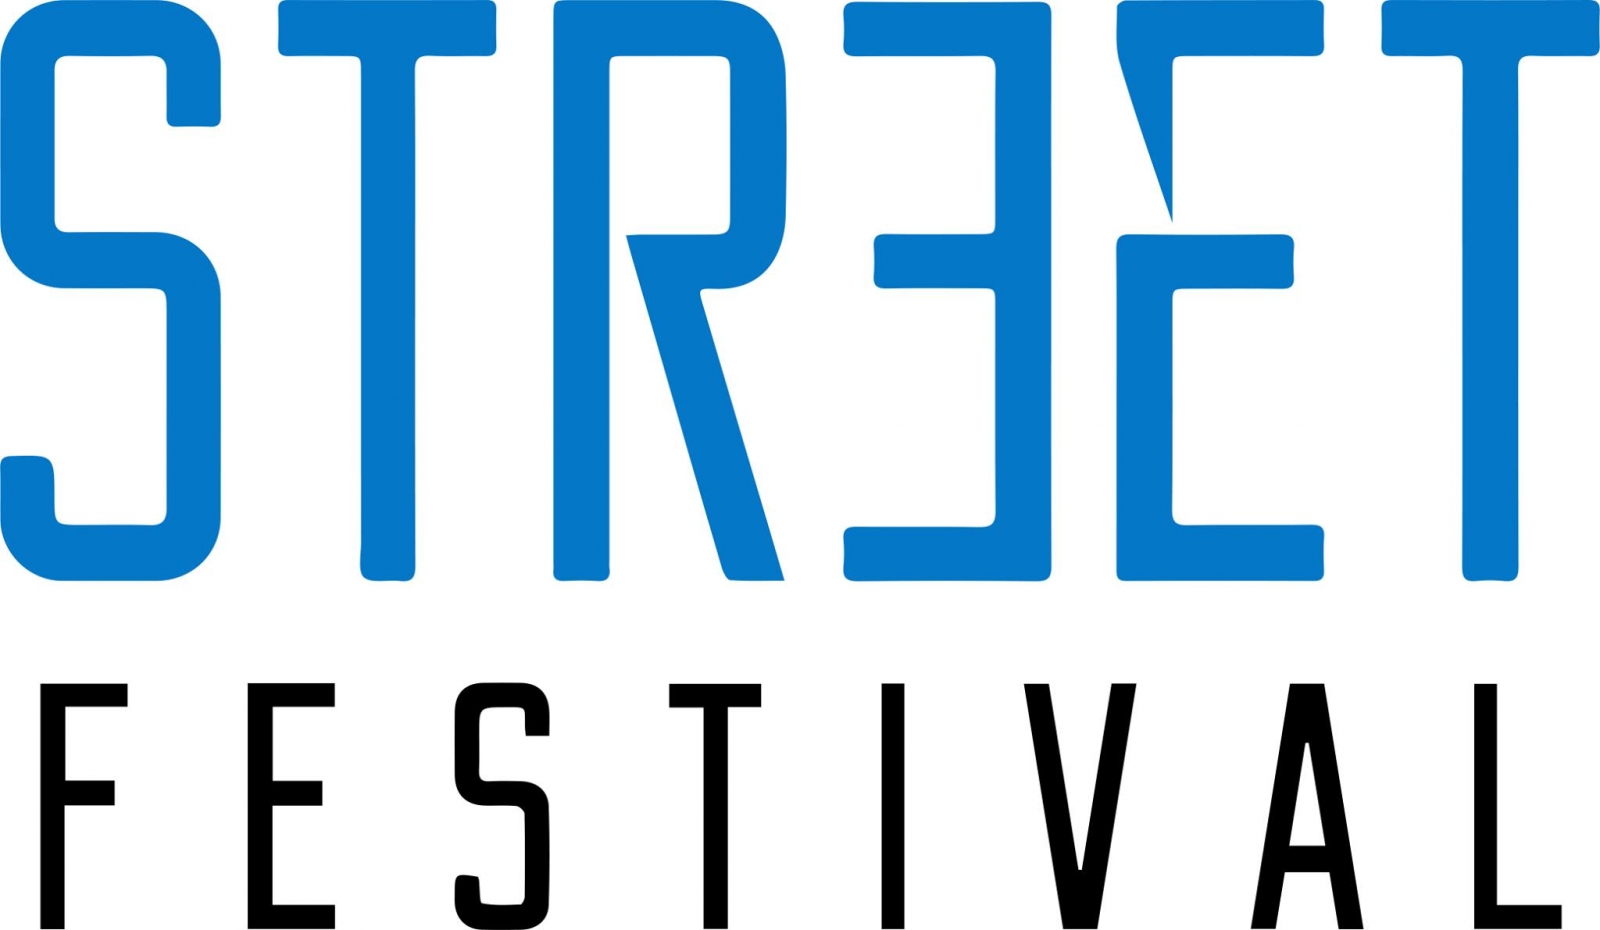 Street Festival 2019 poster